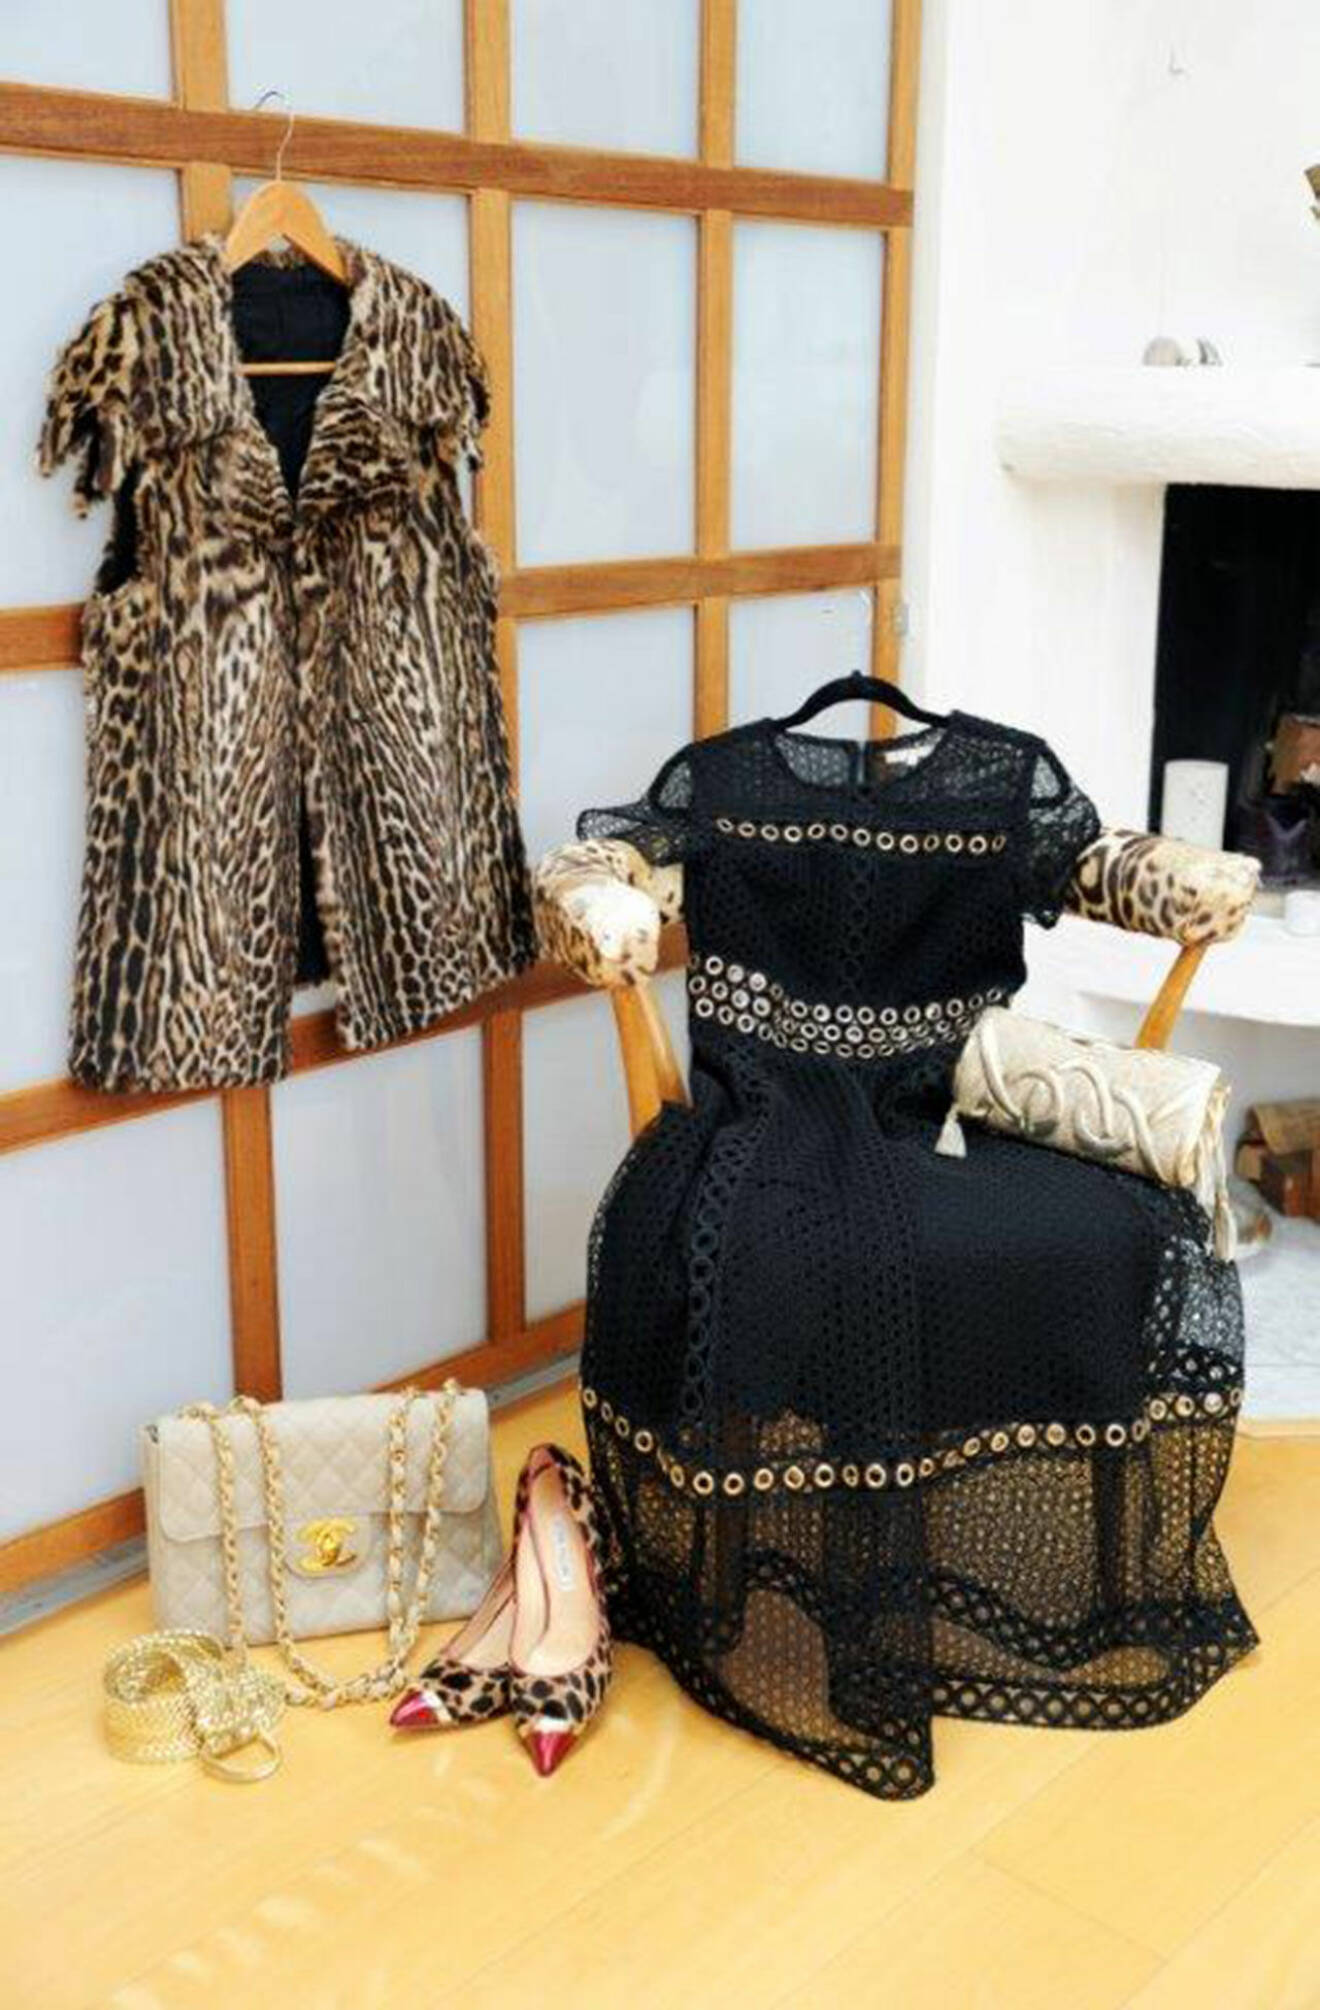 Leopardväst och svart klänning